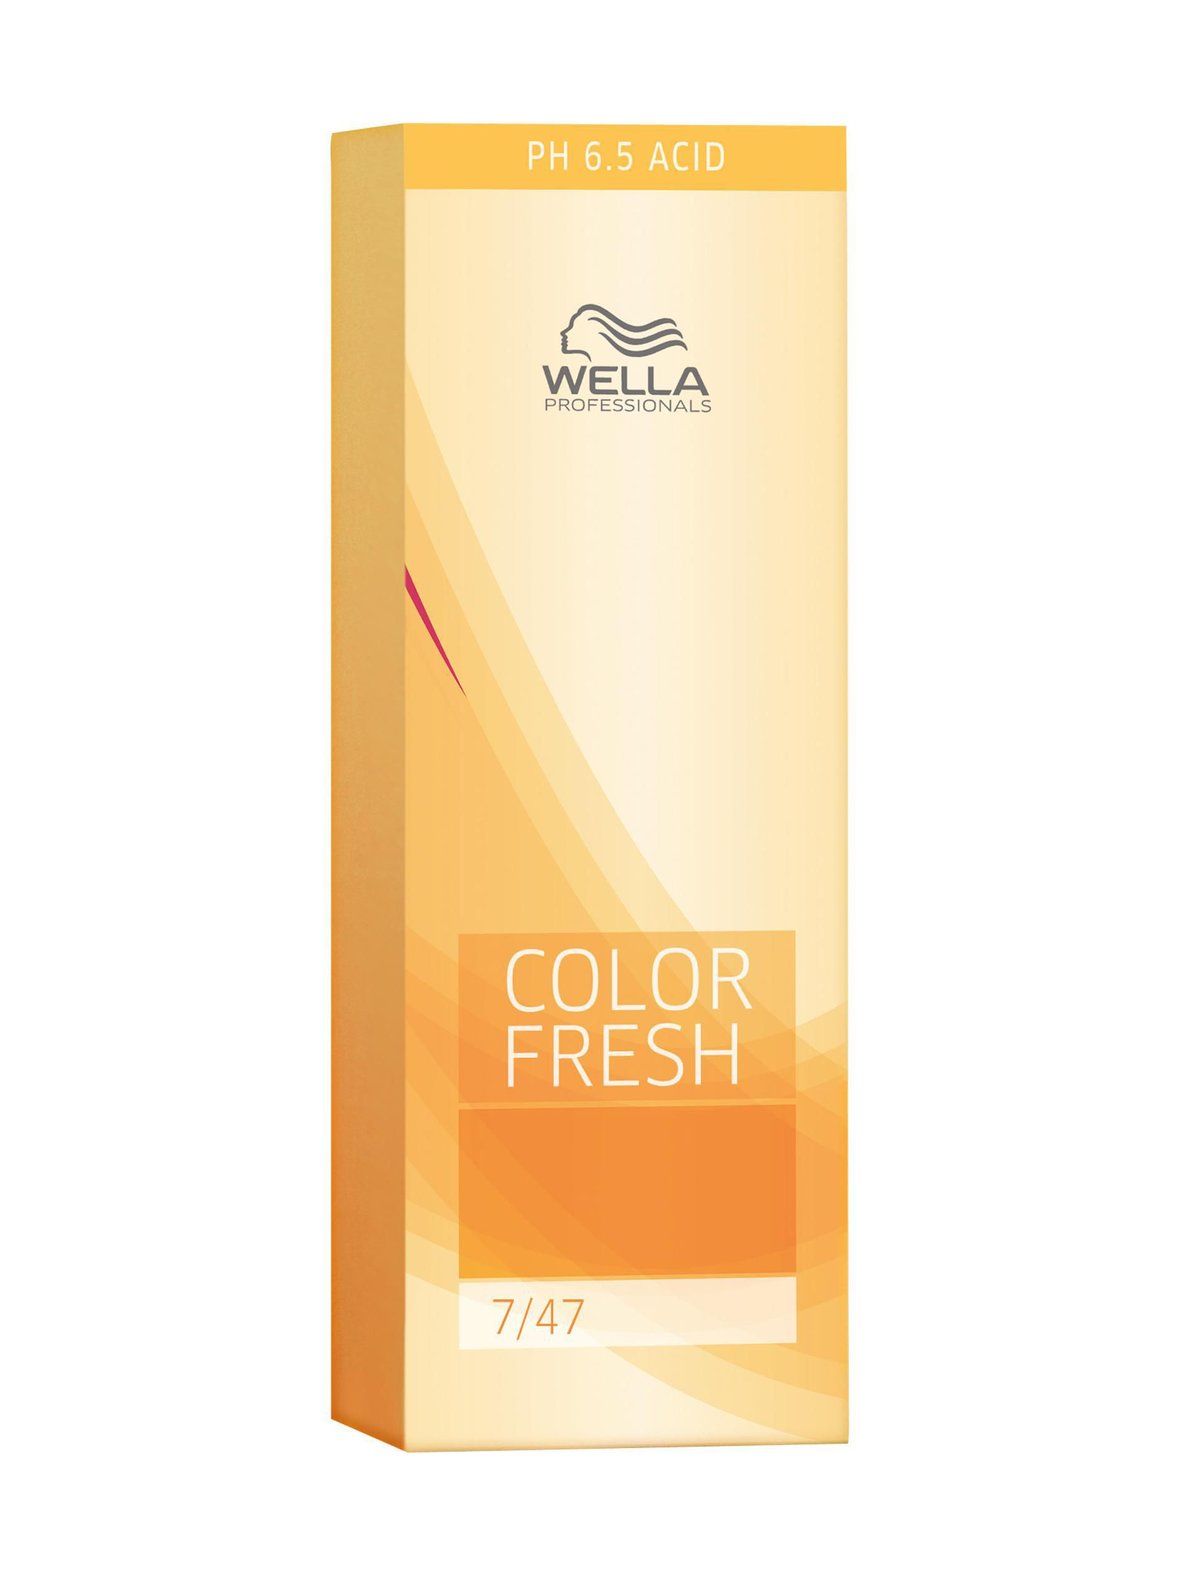 Wella Professional Color Fresh fresh -suoraväri 75 ml